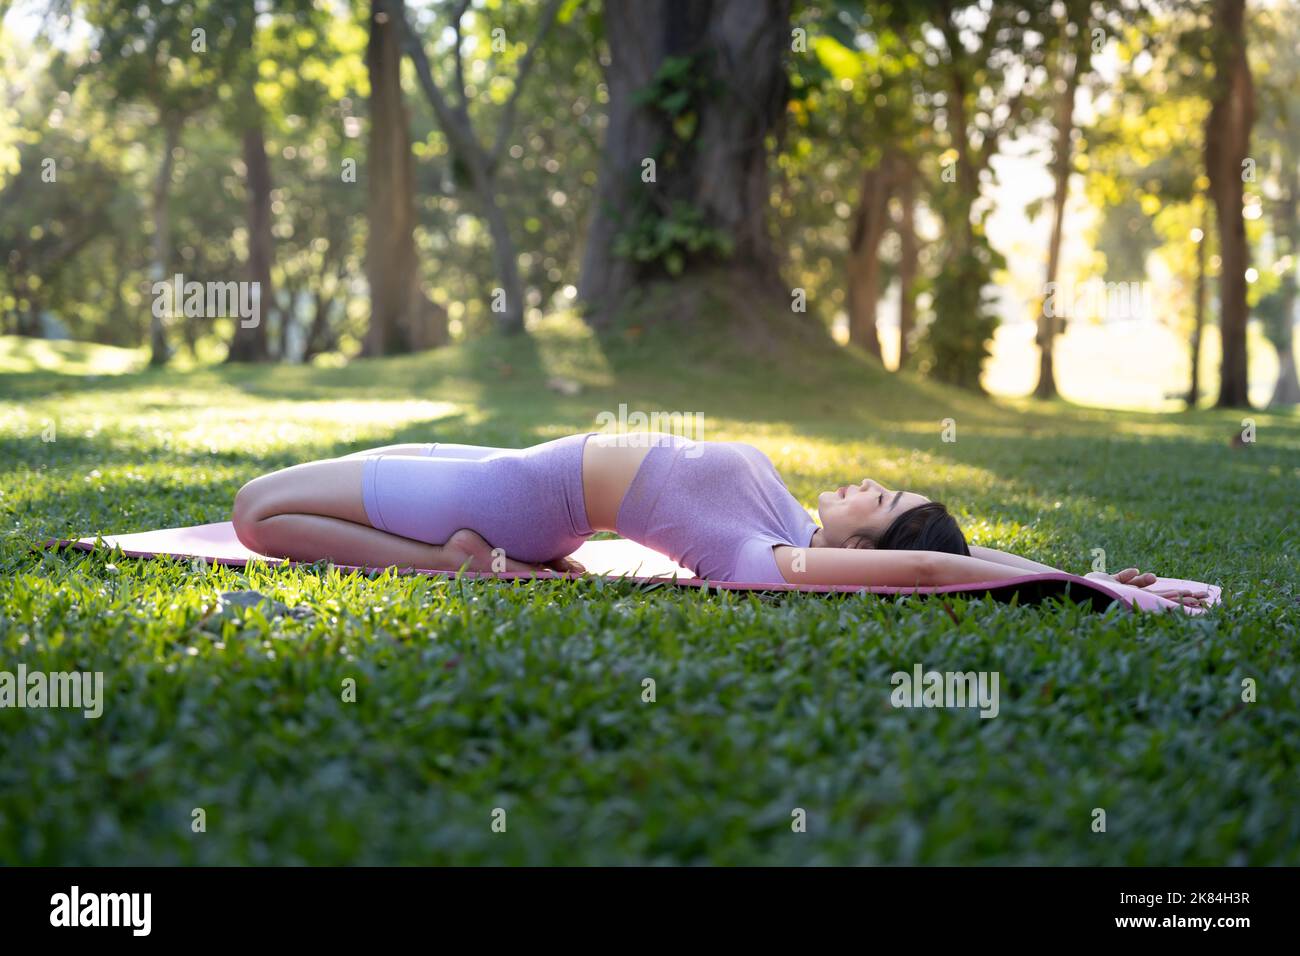 Attraktive junge asiatische Frau praktiziert Yoga, trainiert im Park, steht ein Bein auf einer Yogamatte und zeigt eine ausgeglichene Haltung. Wellness-Lifestyle und Stockfoto